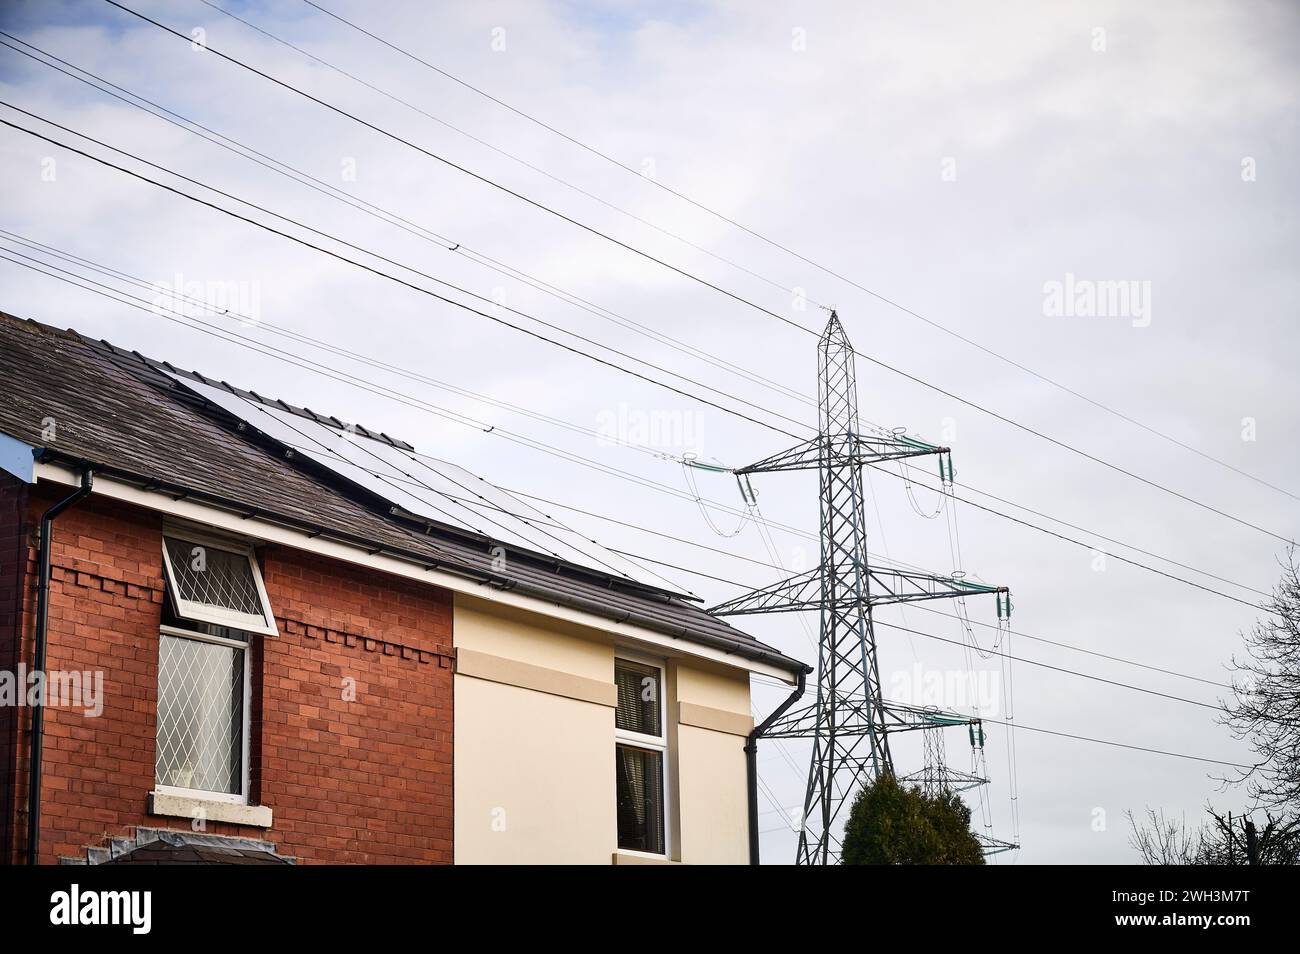 Casa con paneles solares en el techo que se sienta debajo de las líneas eléctricas de la red nacional y el pilón que muestra dos formas de generación de electricidad Foto de stock